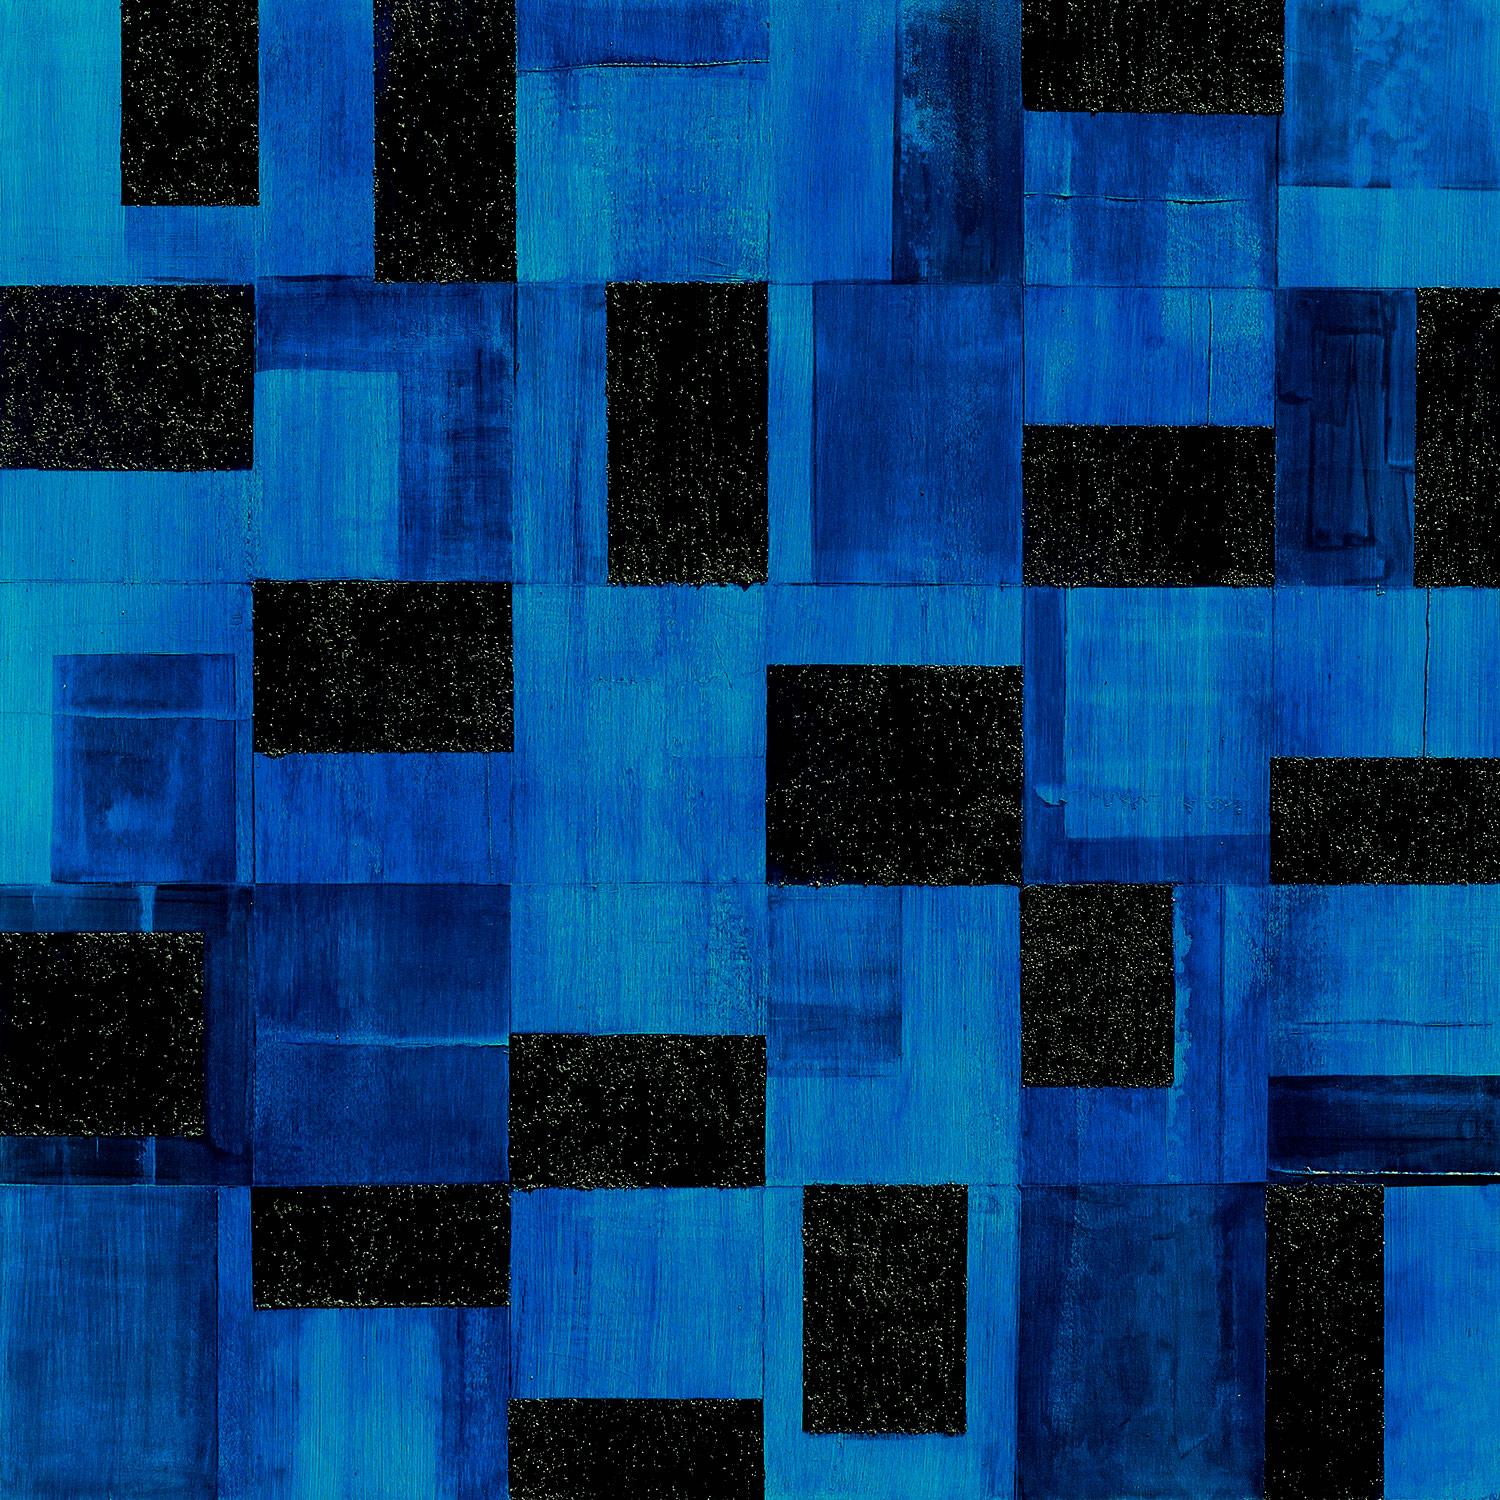 Abstract Painting Christie Owen - "Geometric 3074" Composition abstraite en couches de médias mixtes sur panneau de bouleau baltique